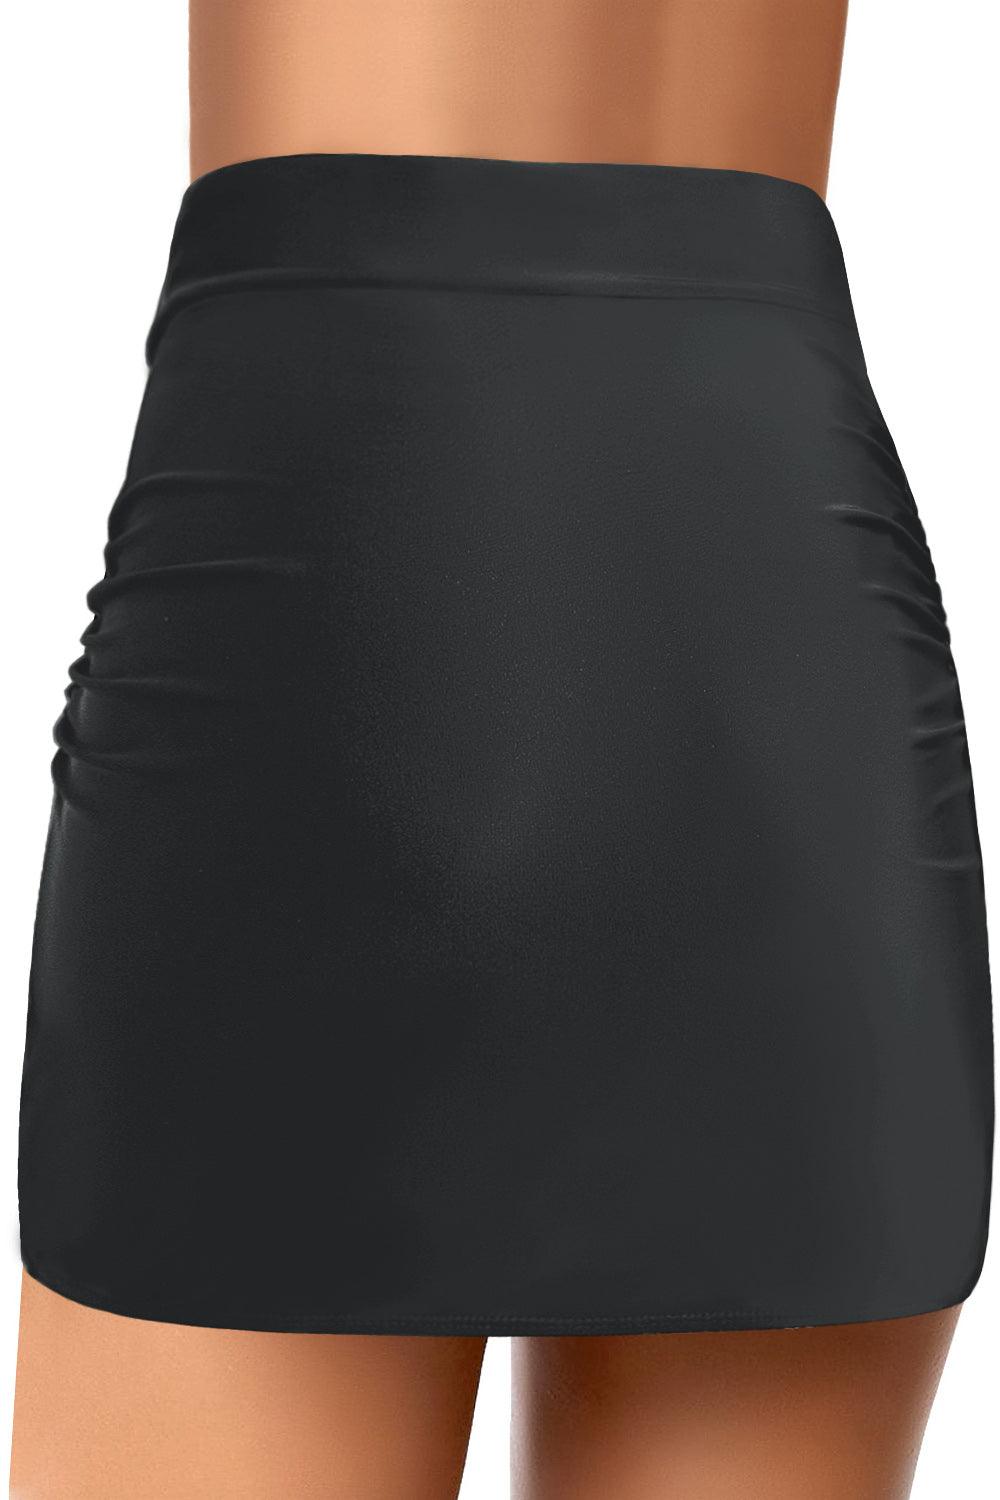 Arch Hem Swim Skirt - L & M Kee, LLC